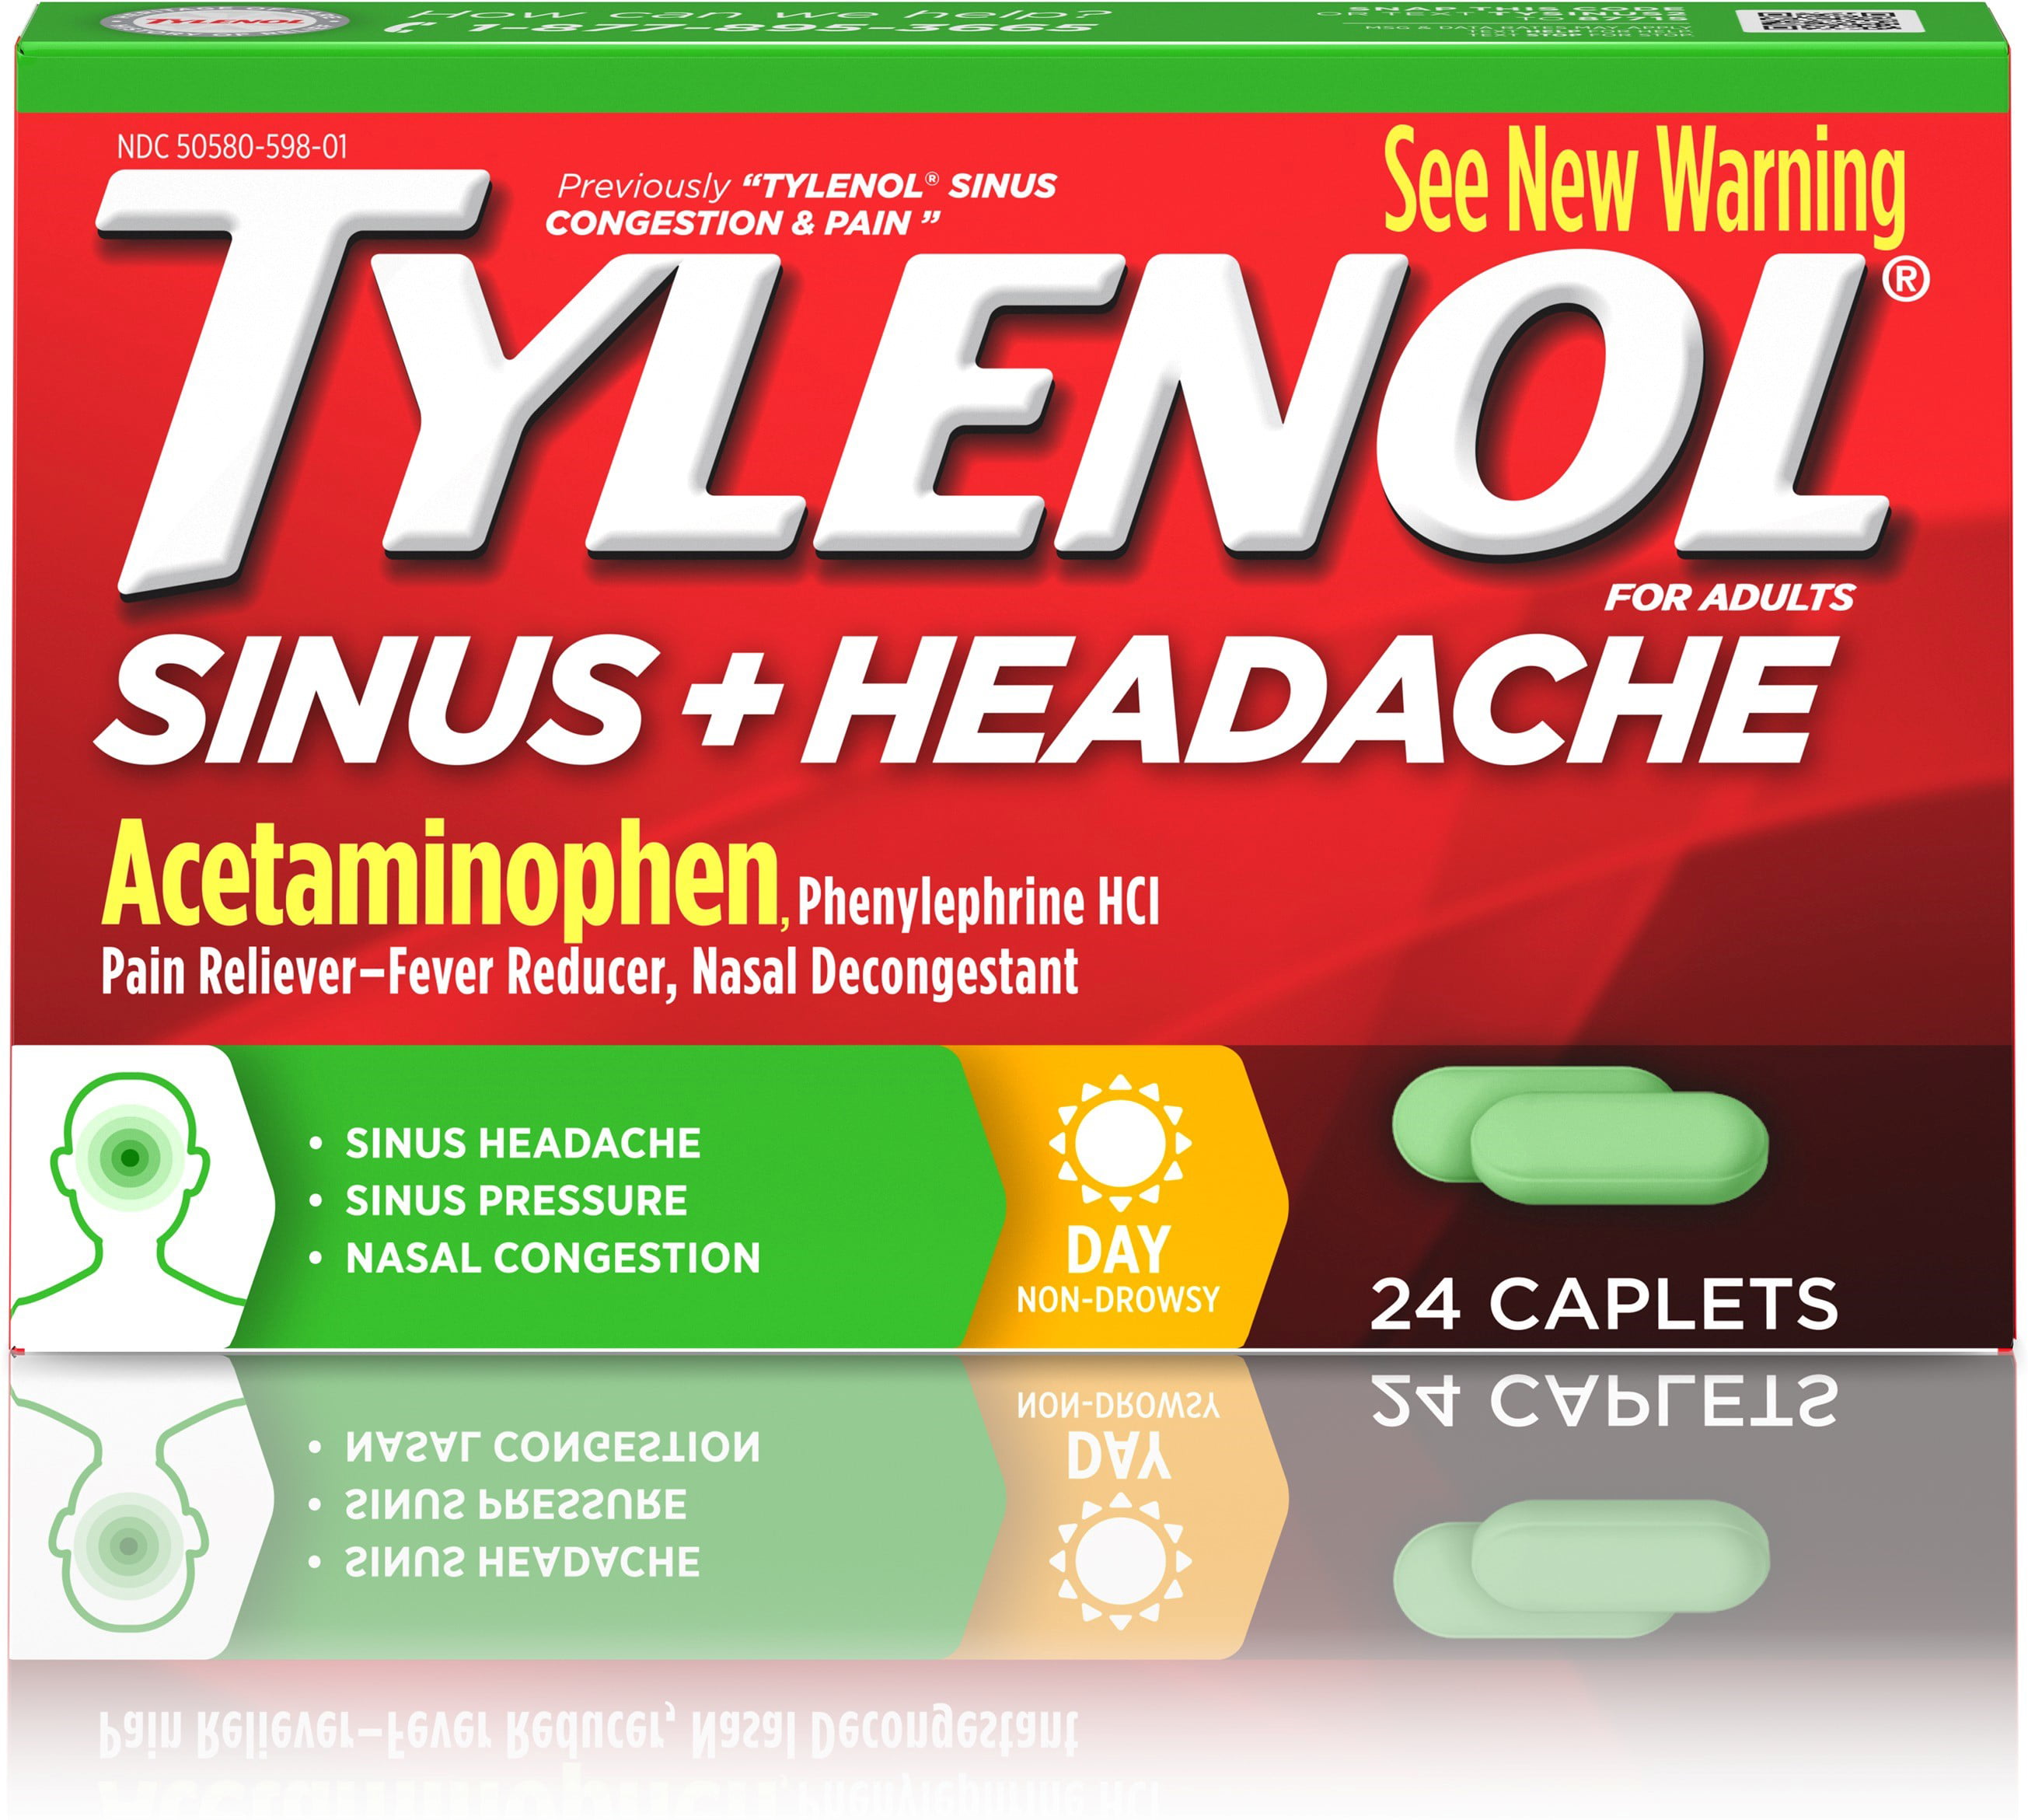 Tylenol Sinus Dosage Chart